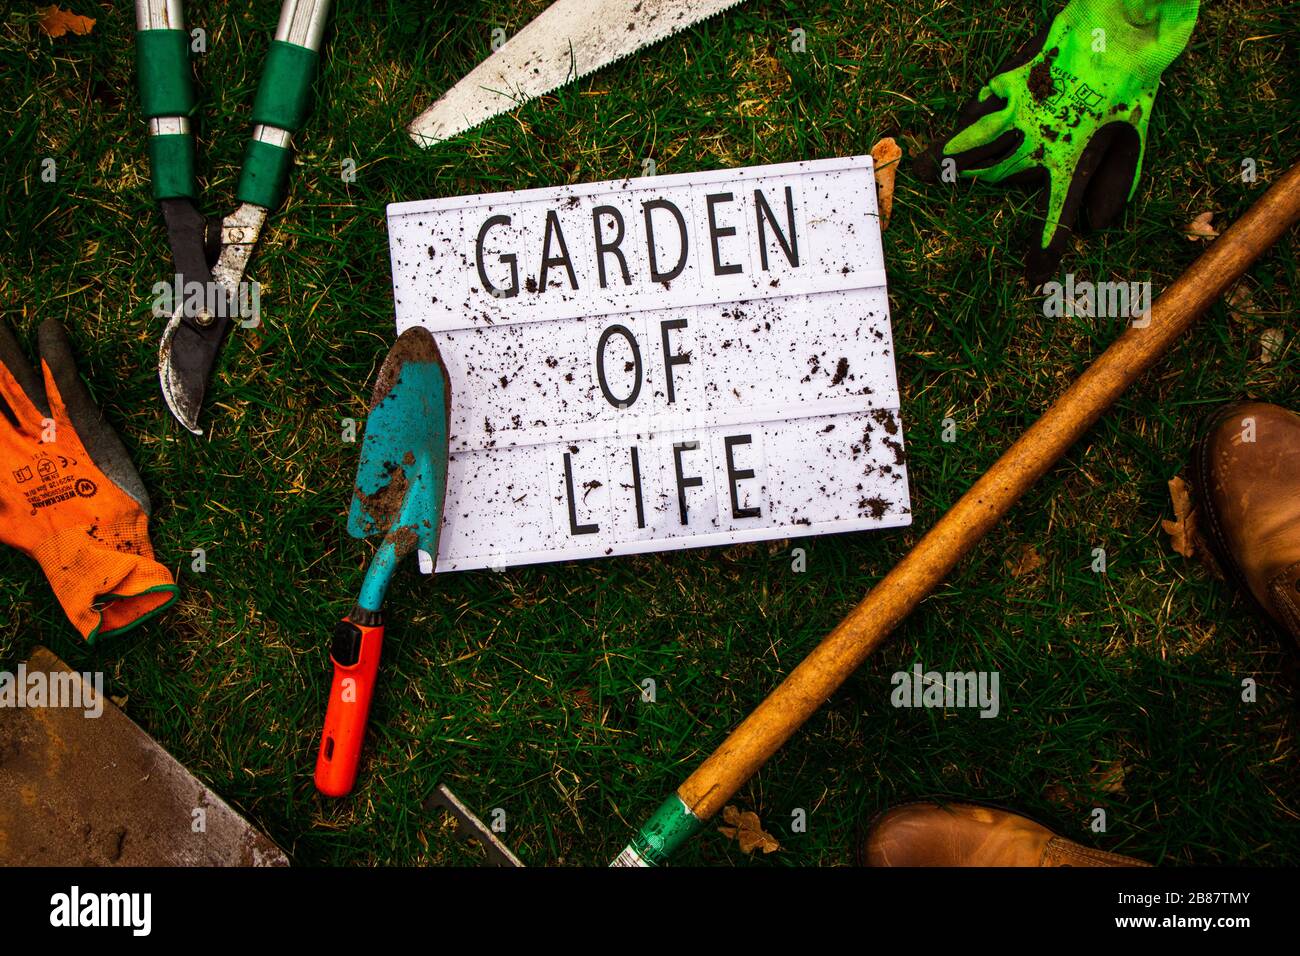 Draufsicht auf einen Leuchtkasten, der von Werkzeugen eines Gärtners und des Gewänders selbst umgeben ist. Der Leuchtkasten hat "Garten des Lebens" ausgeschrieben. Lifestyle. Stockfoto